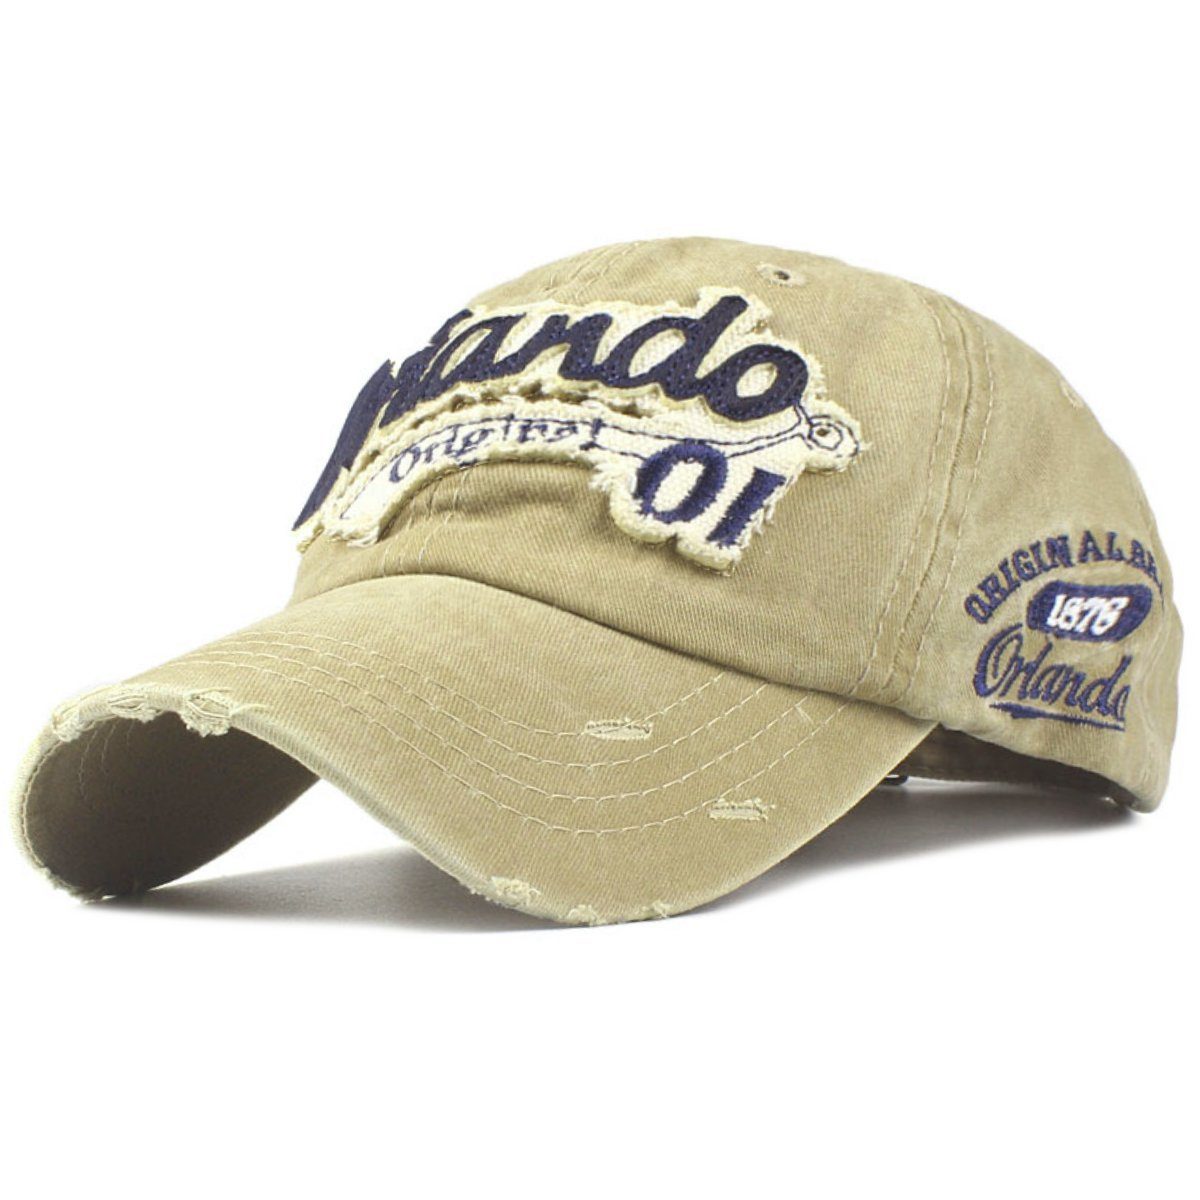 Sporty Baseball Cap Orlando Original Vintage Style Used Washed Look Retro Baseballcap khaki | Baseball Caps